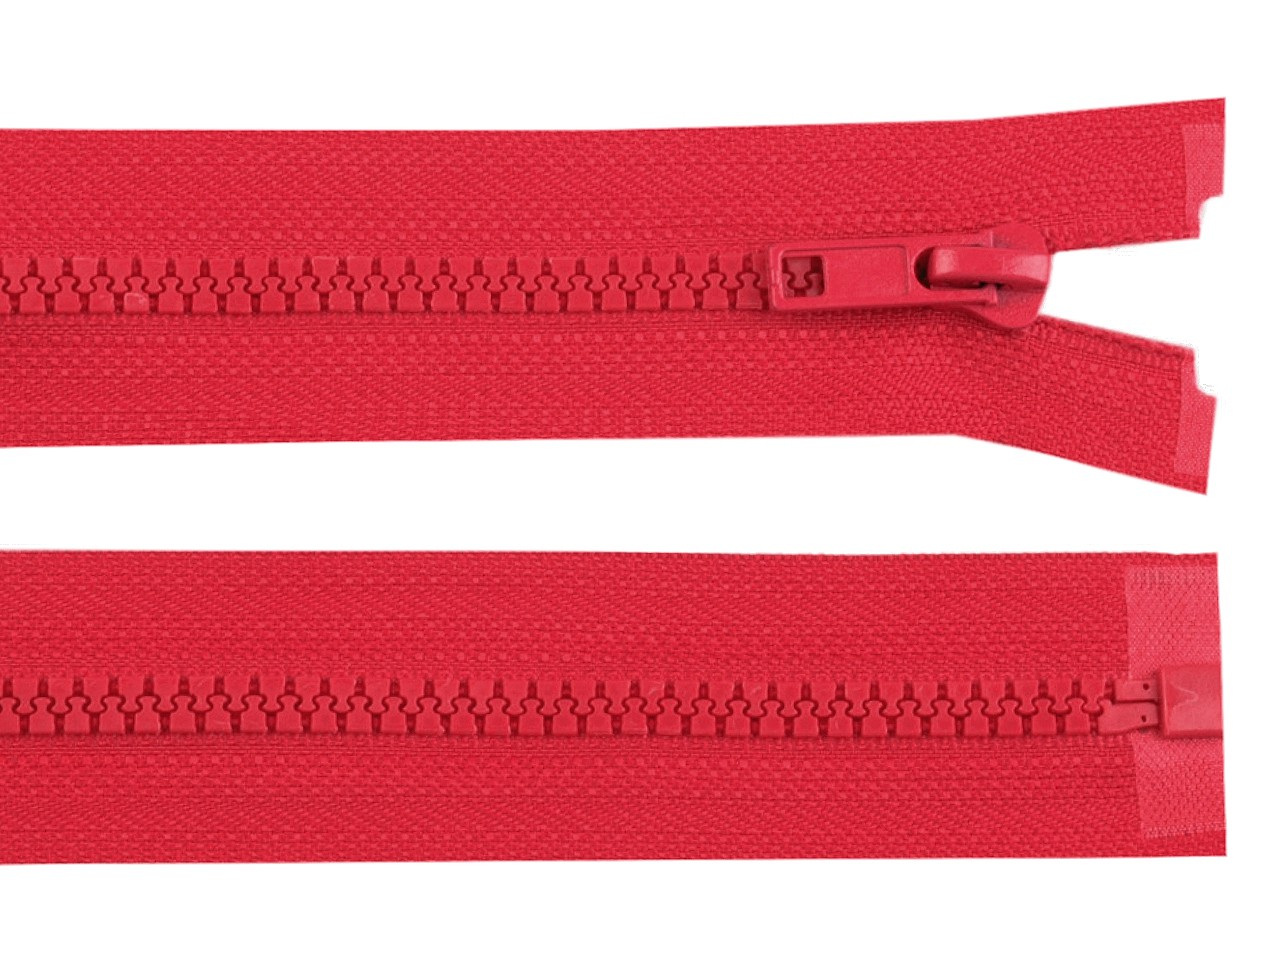 Kostěný zip No 5 délka 90 cm bundový, barva 162 Poppy Red